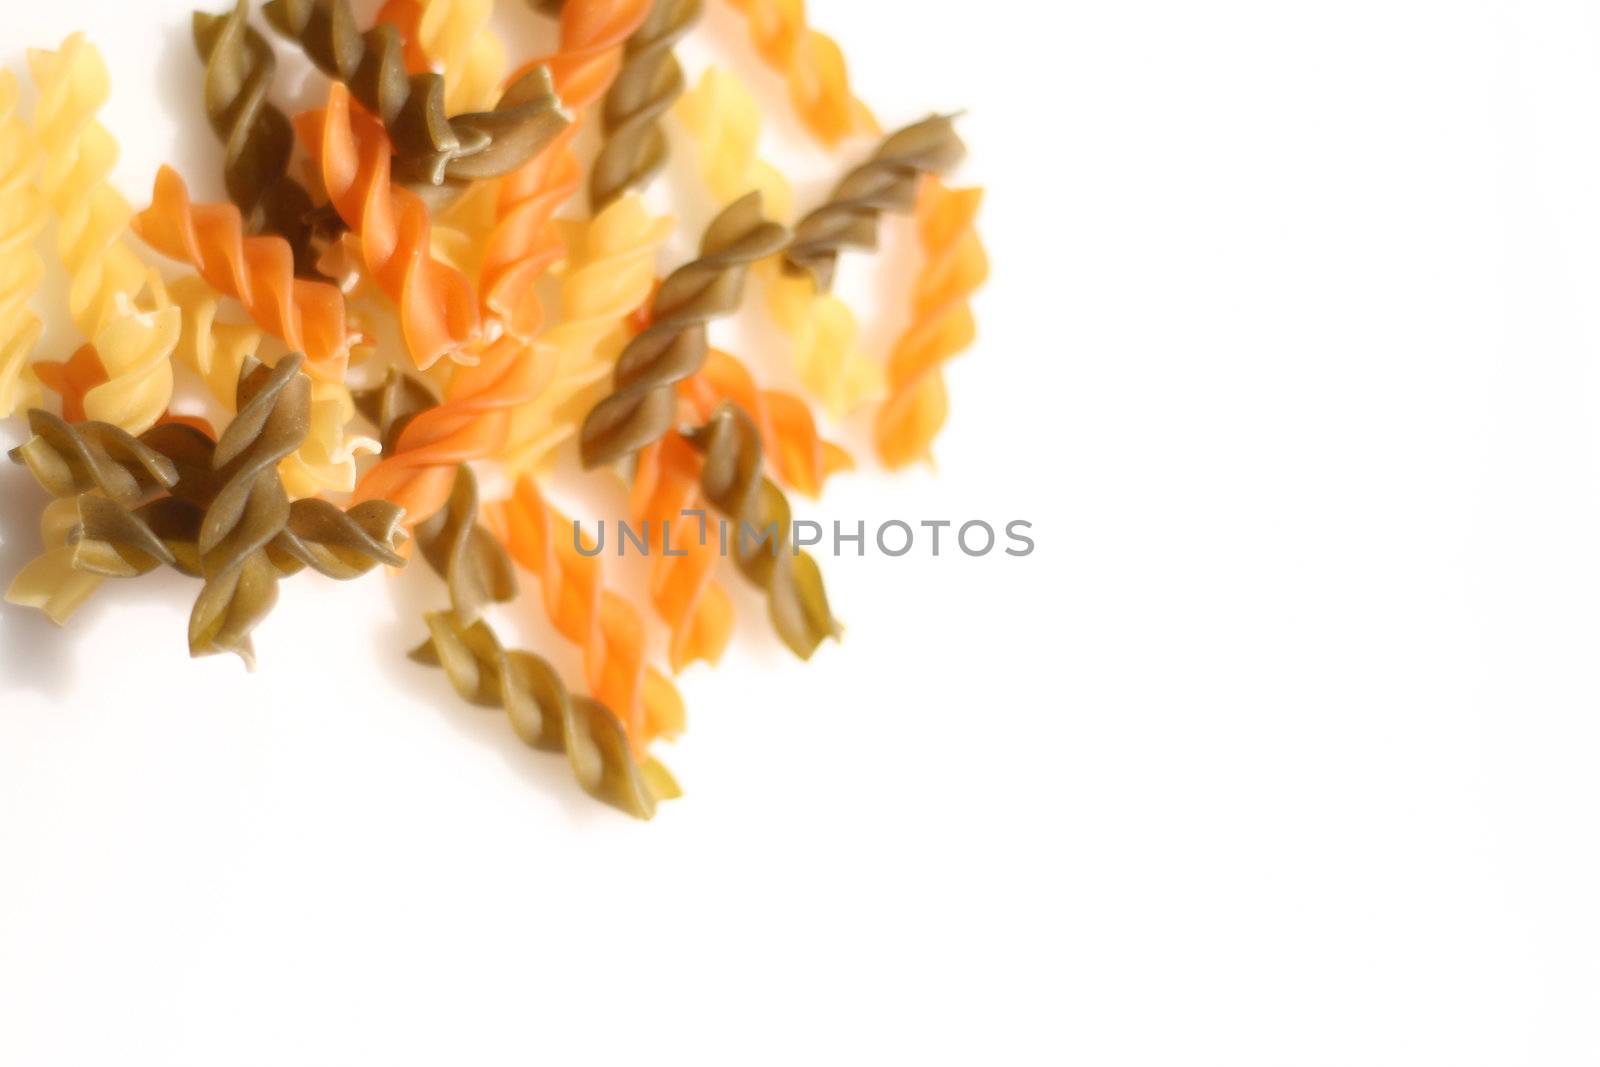 pasta spirals by leafy